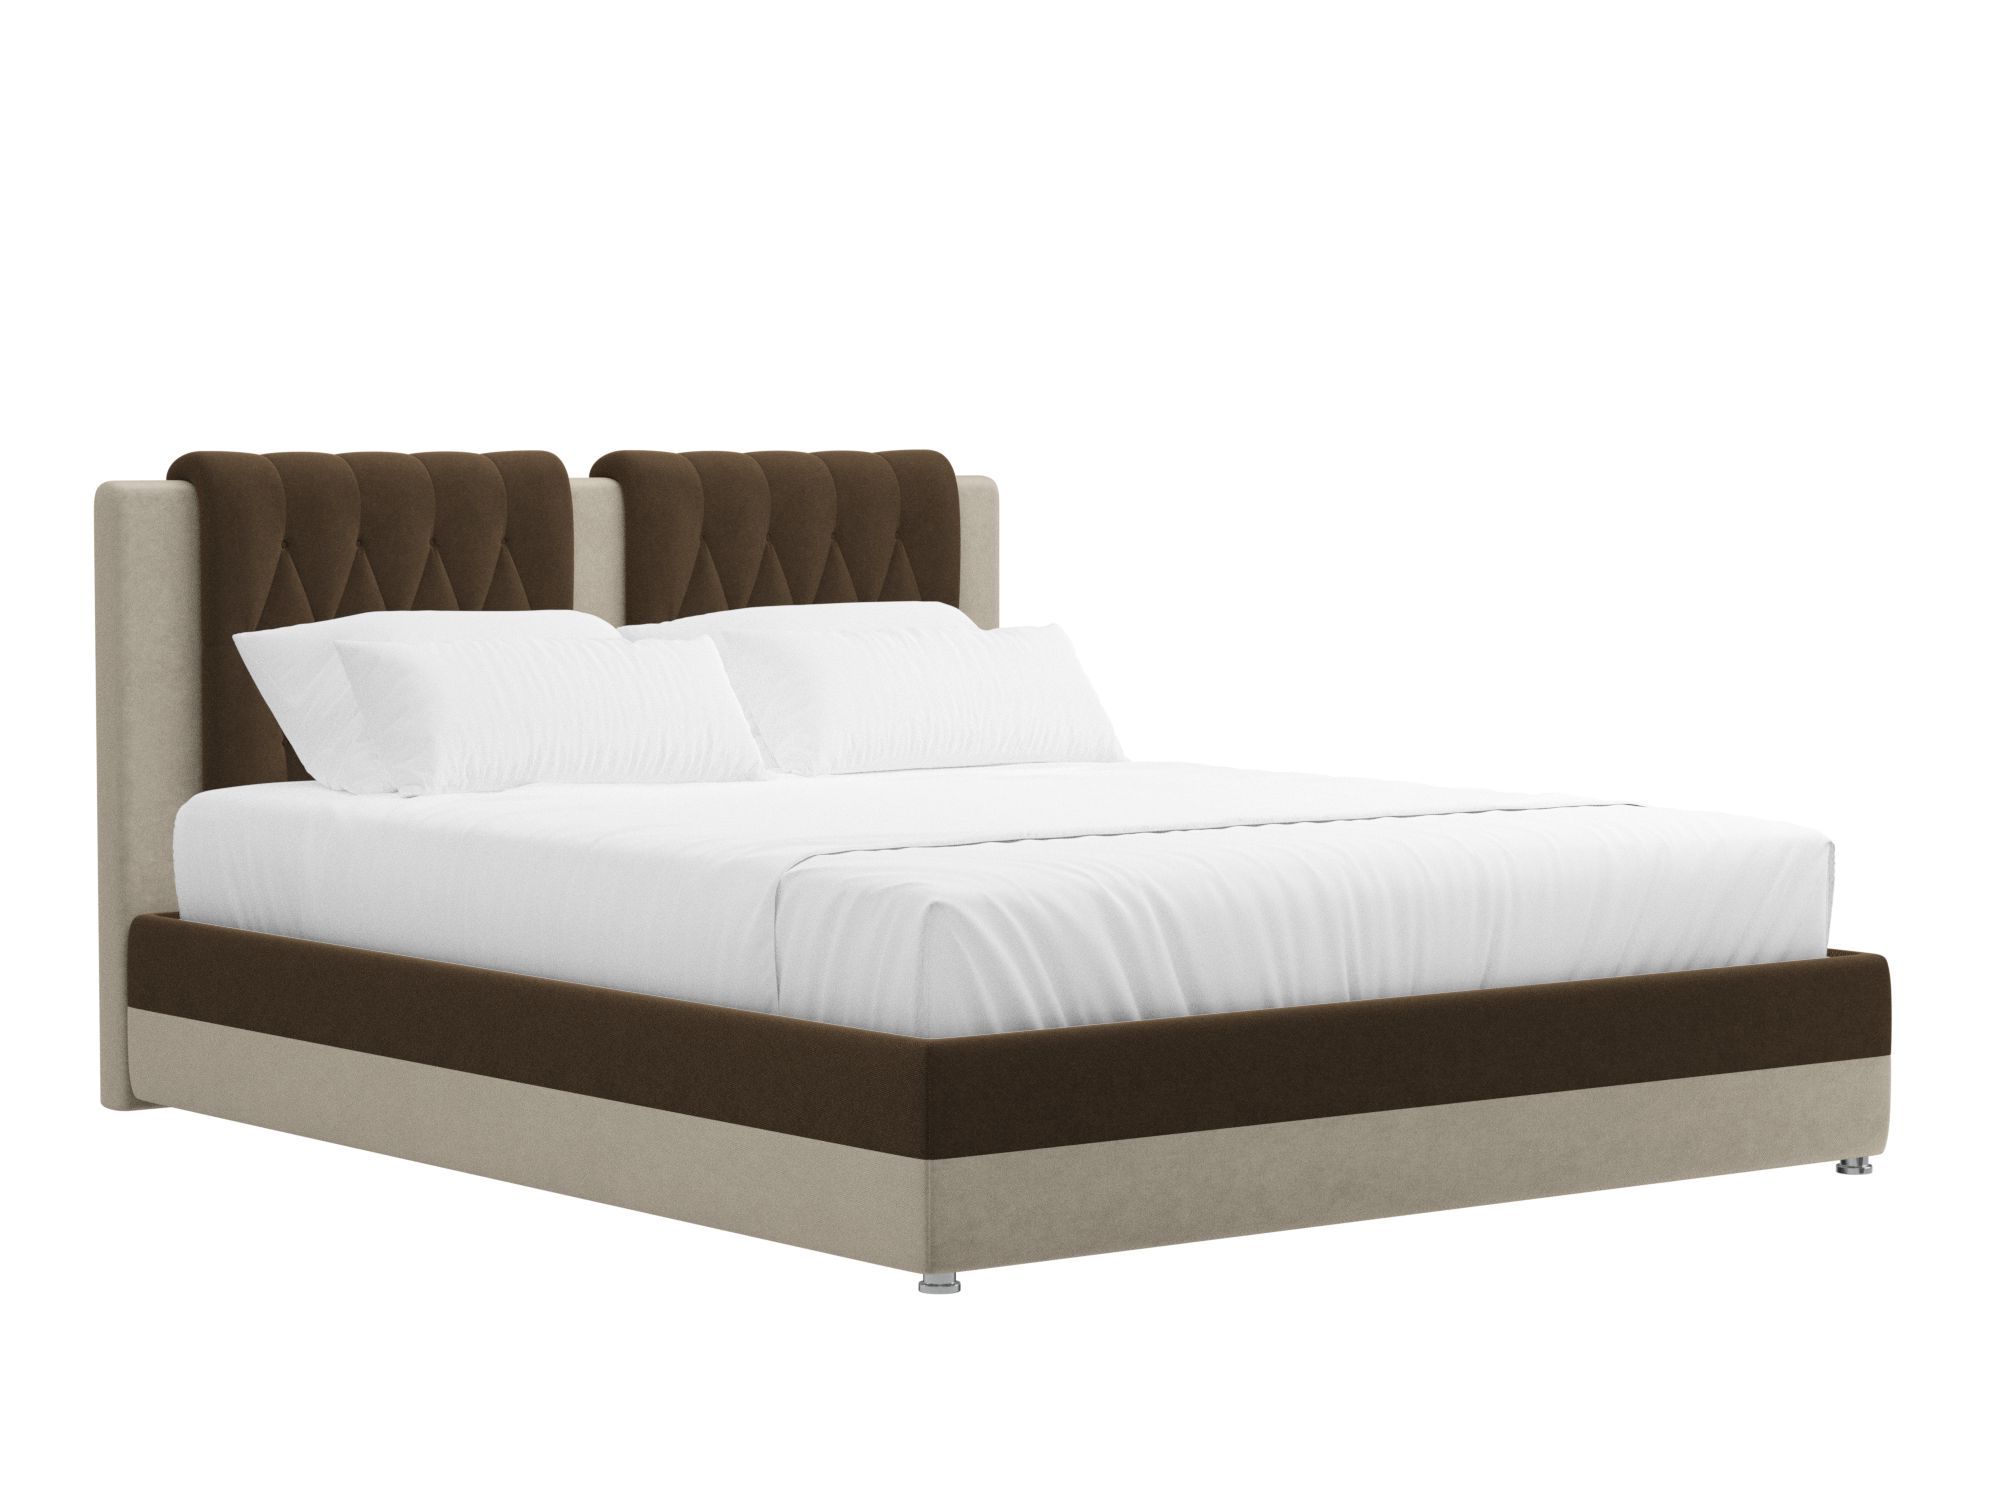 Кровать Камилла (160x200) Коричневый, Бежевый, ЛДСП интерьерная кровать артмебель камилла микровельвет бежево коричневый